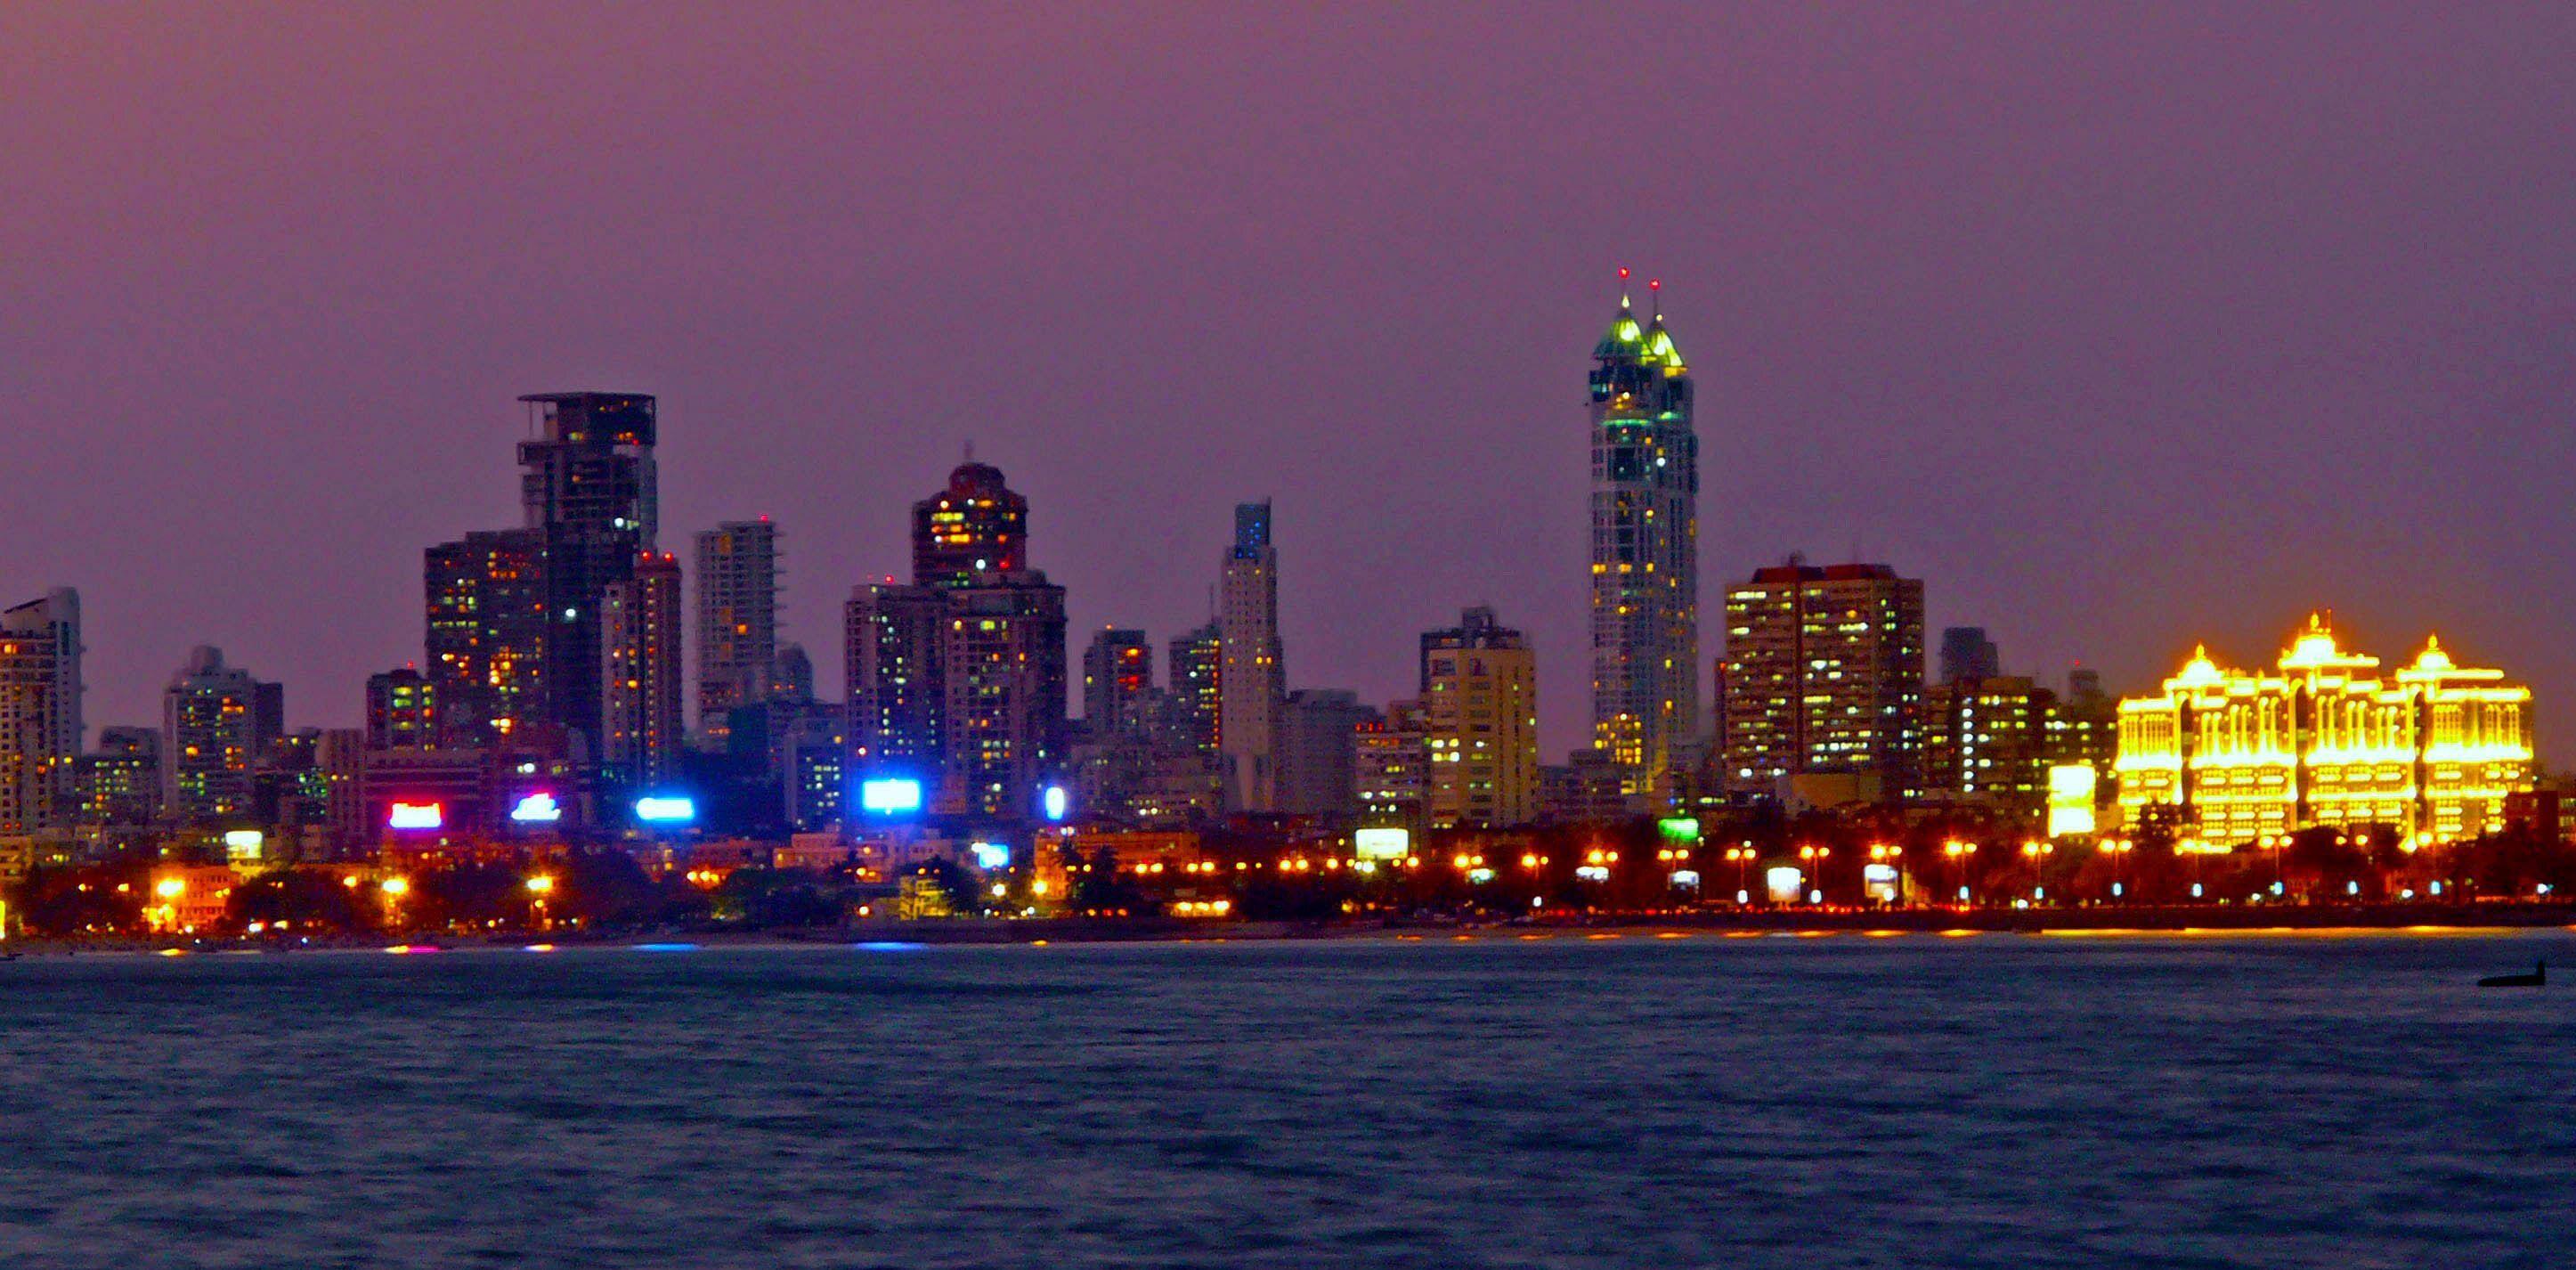 Mumbai_Skyline_at_Night.jpg